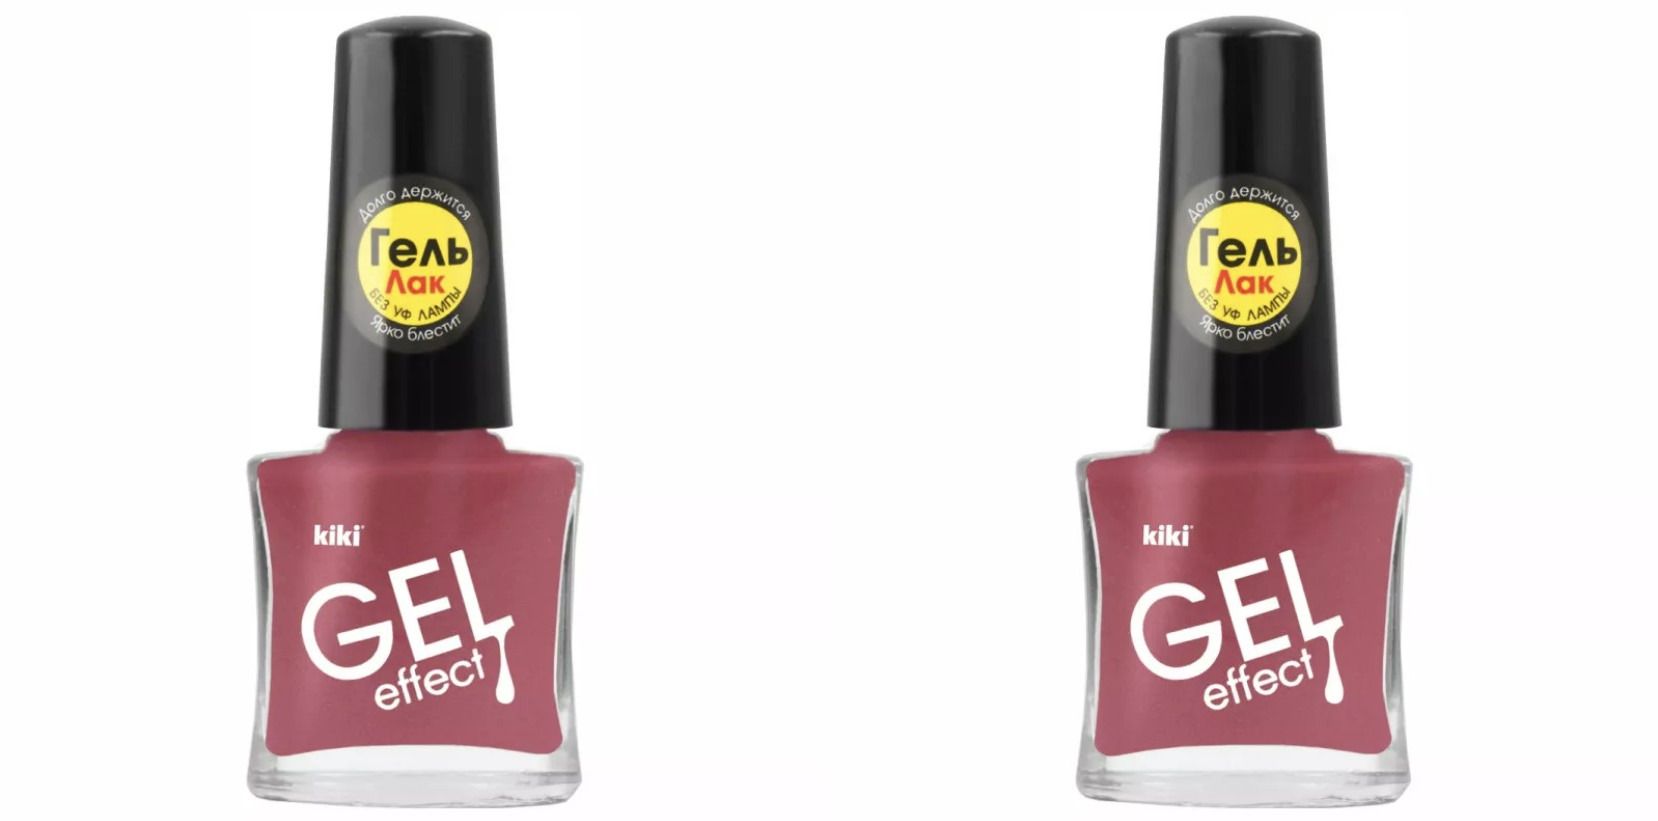 Лак для ногтей Kiki Гель эффект 070 Темно-розовый щербет, 2 шт kiki лак для ногтей gel effect